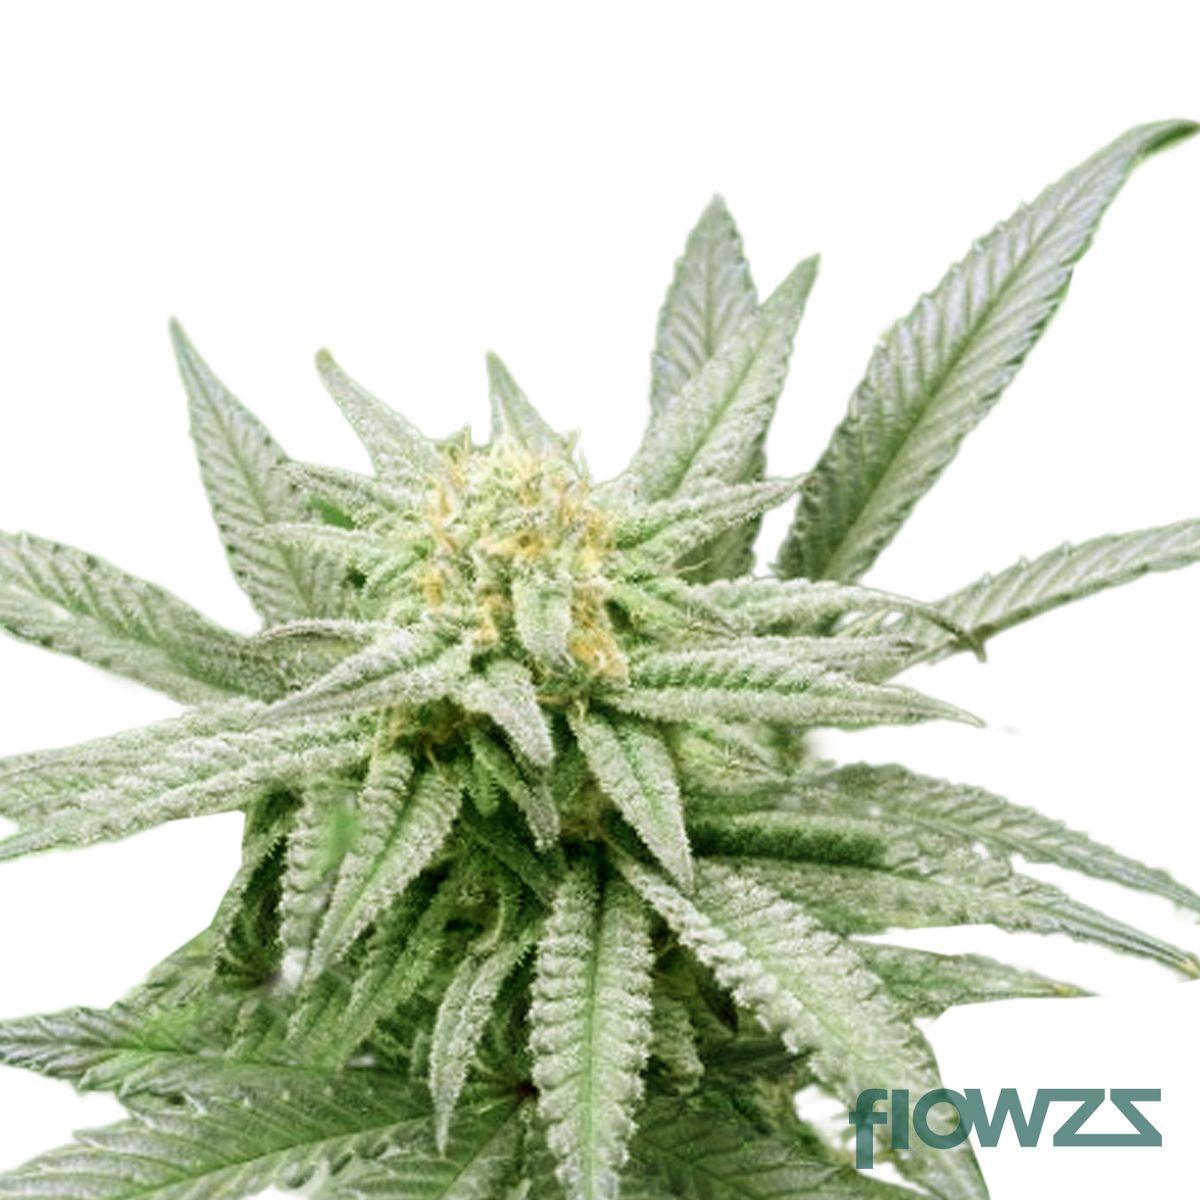 Peyote Critical Cannabis Strain - flowzz.com Preisvergleich